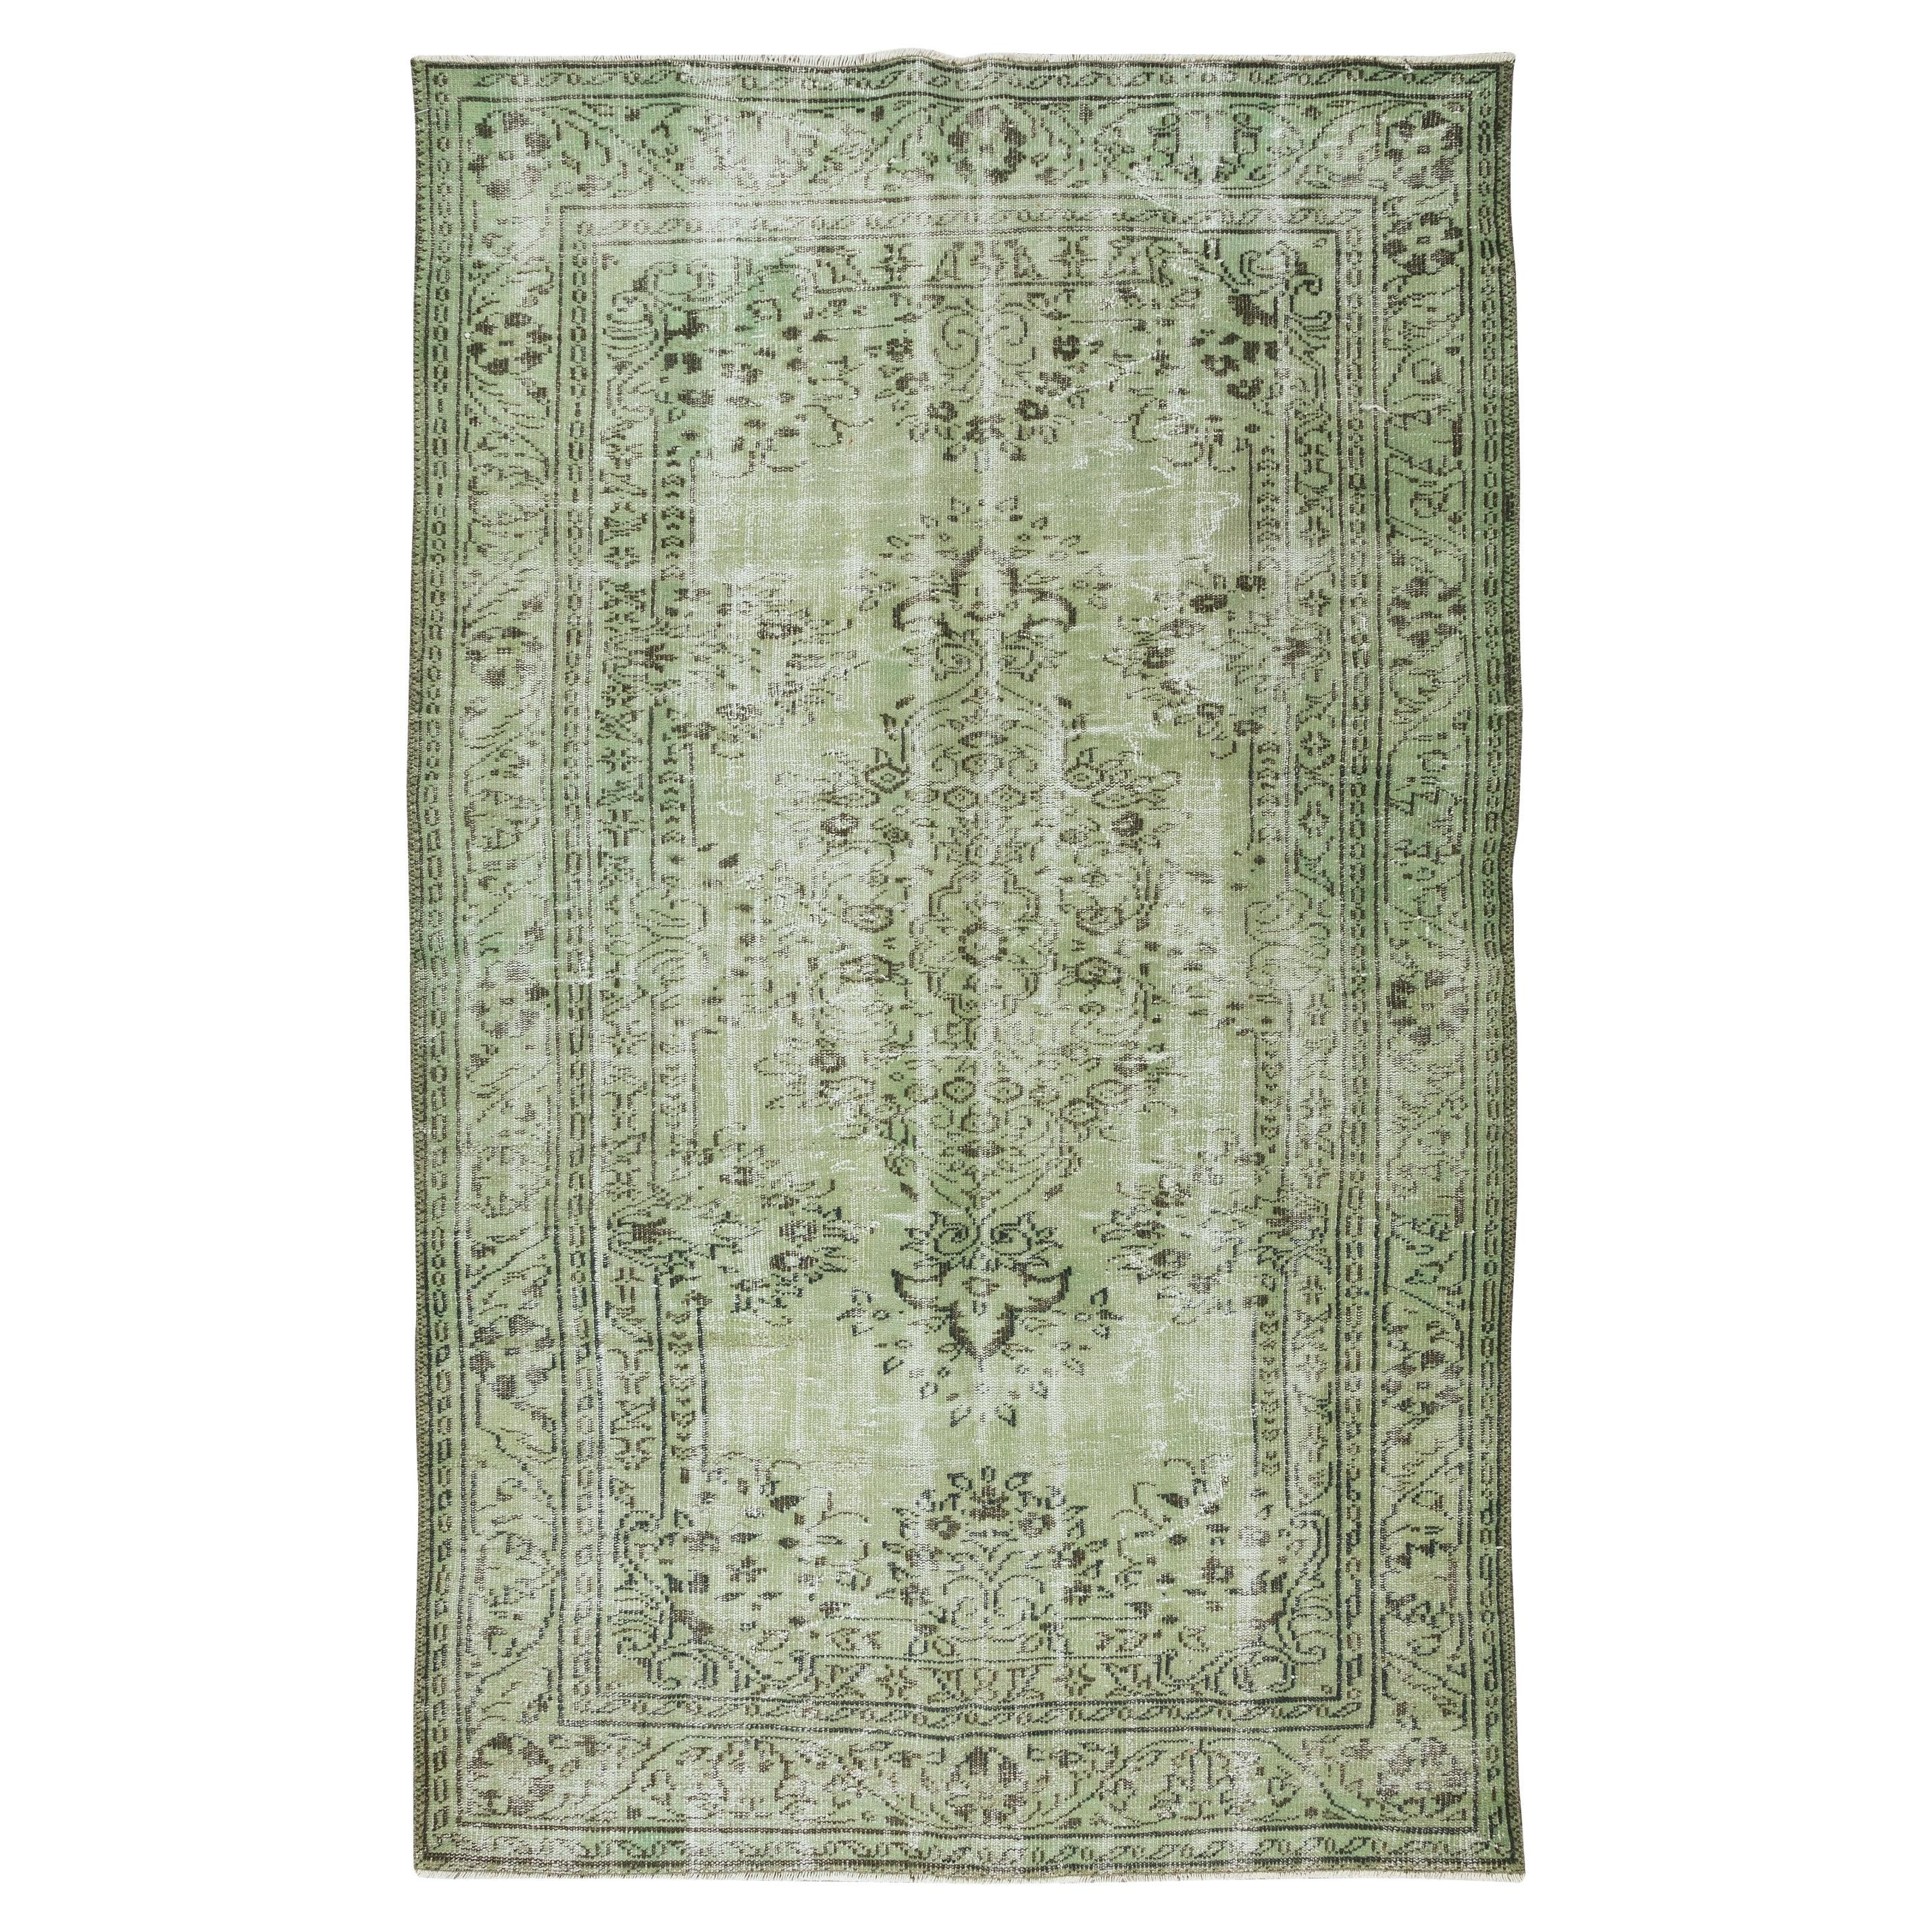 5.8x9.5 Ft Living Room Decor Rug, Light Green Turkish Handmade Carpet For Sale